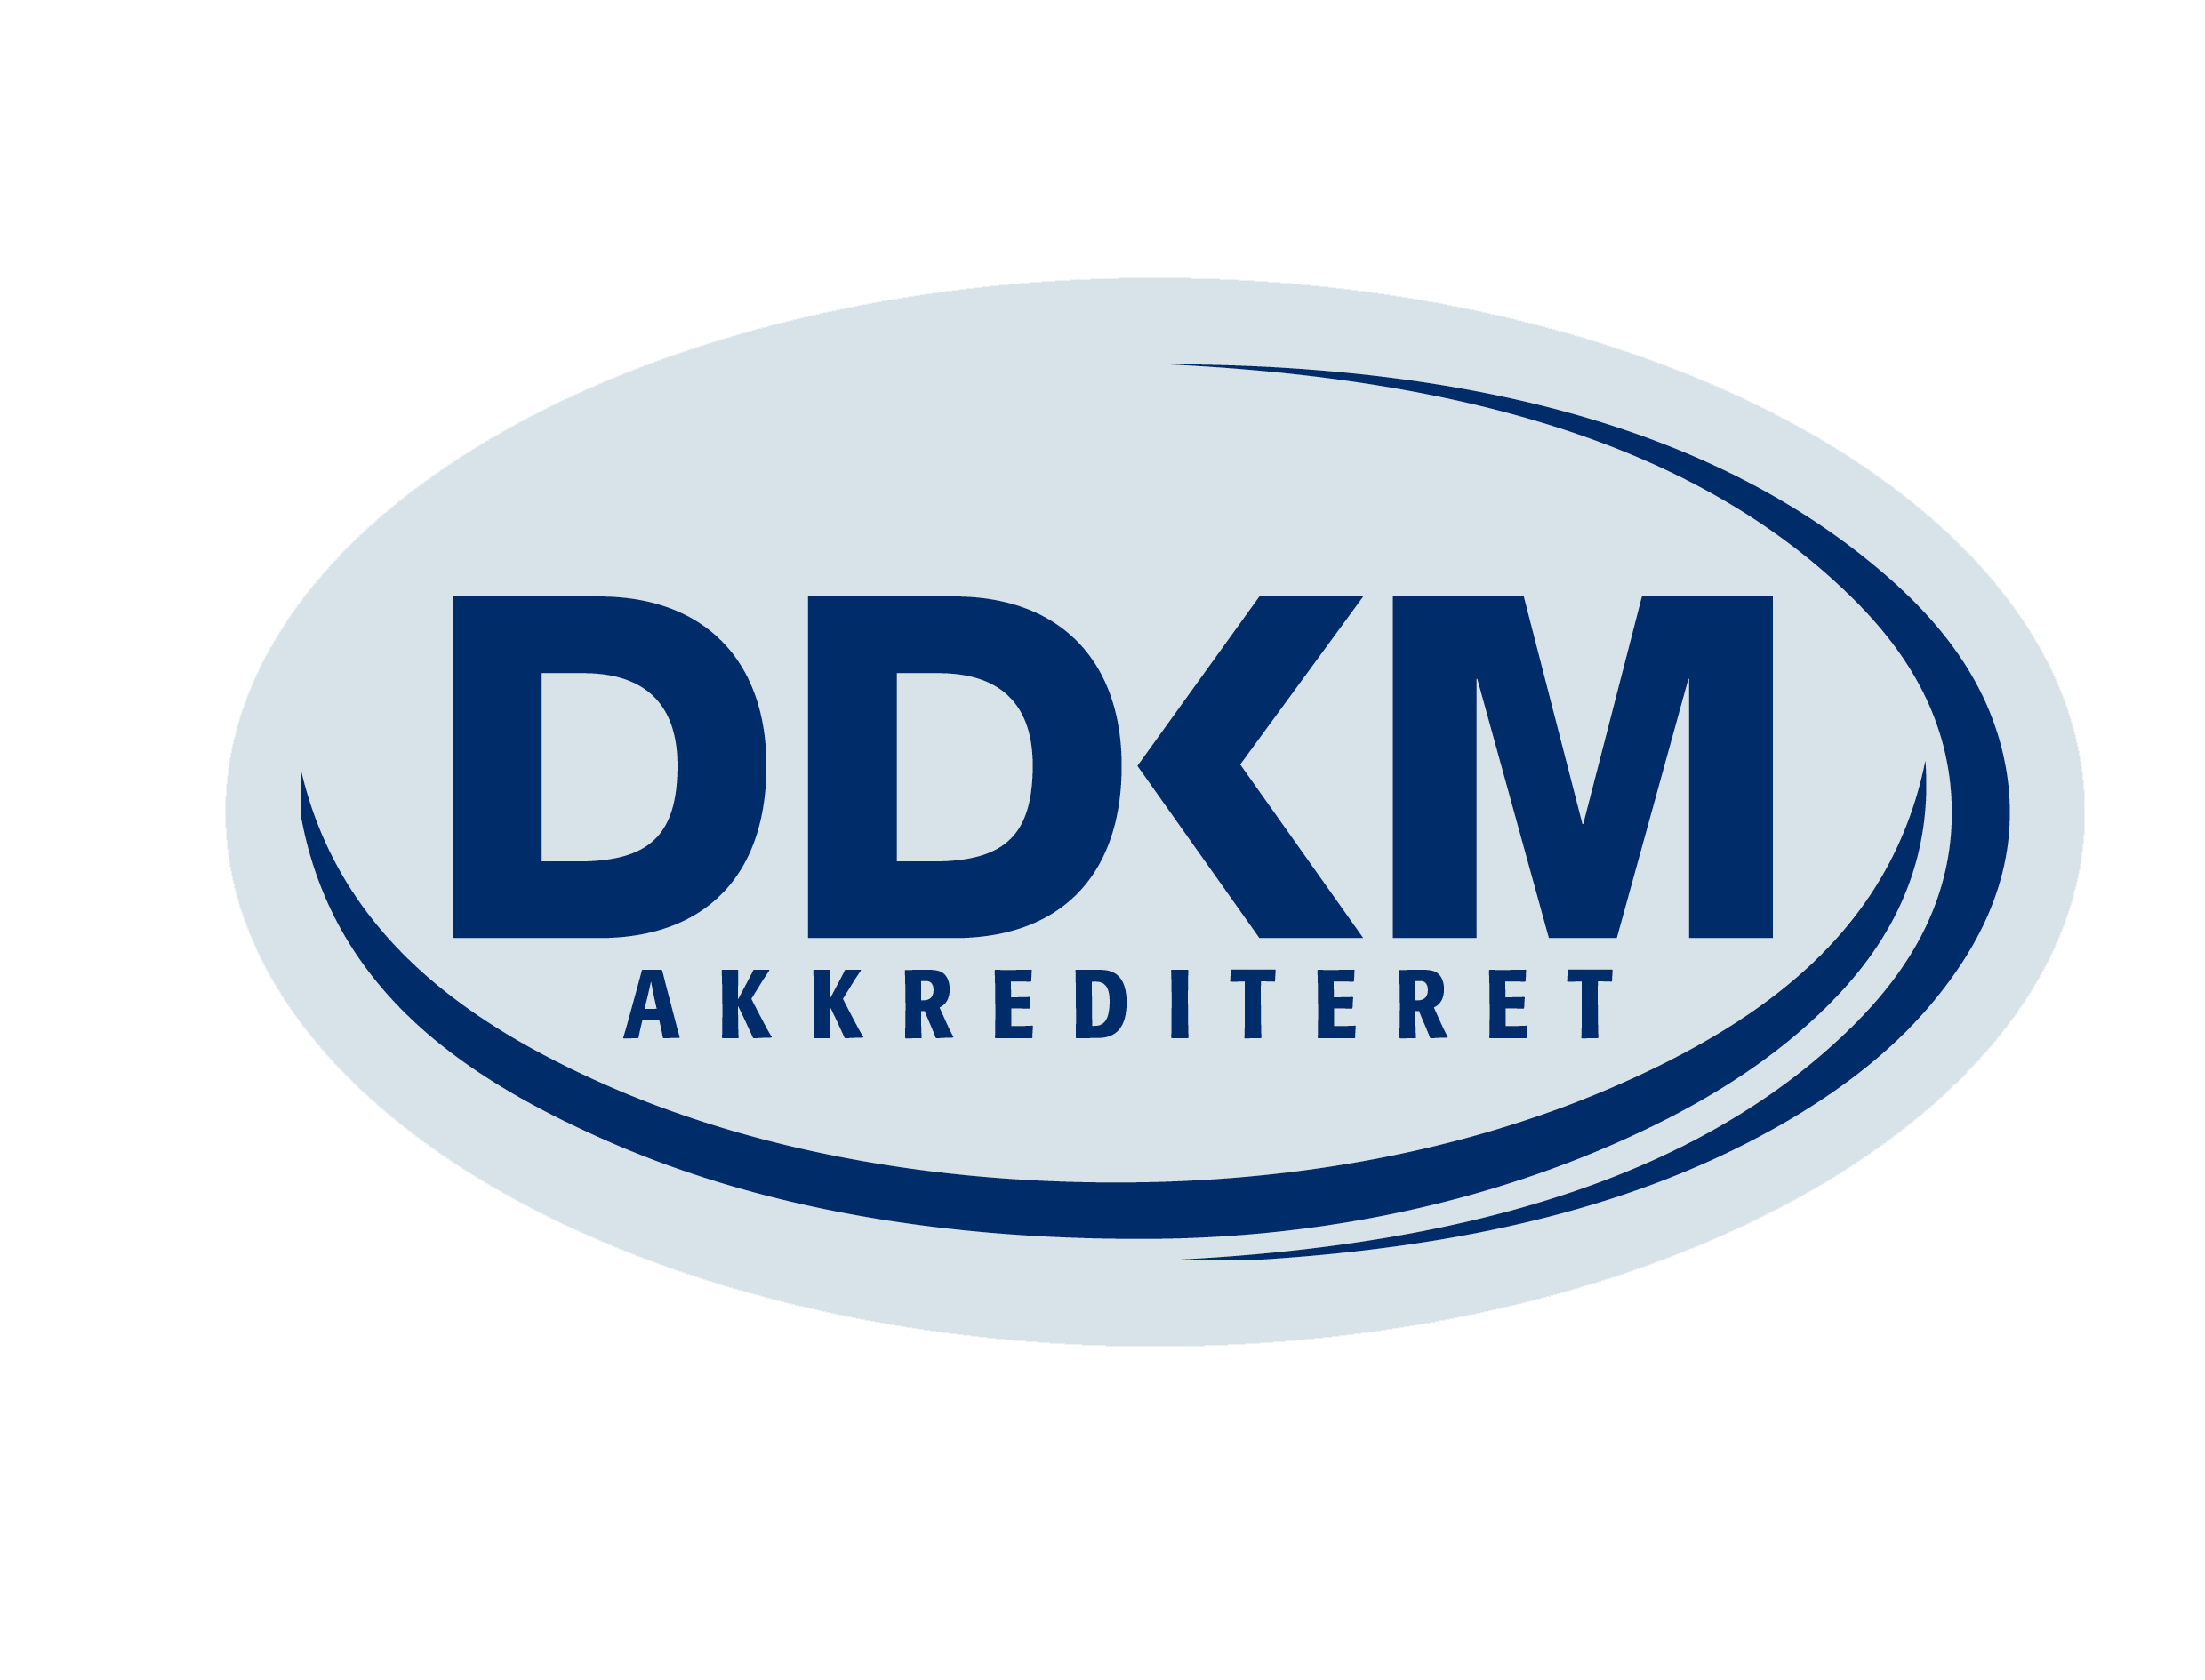 ddkm akkrediteret logo, stort logo uden baggrund2